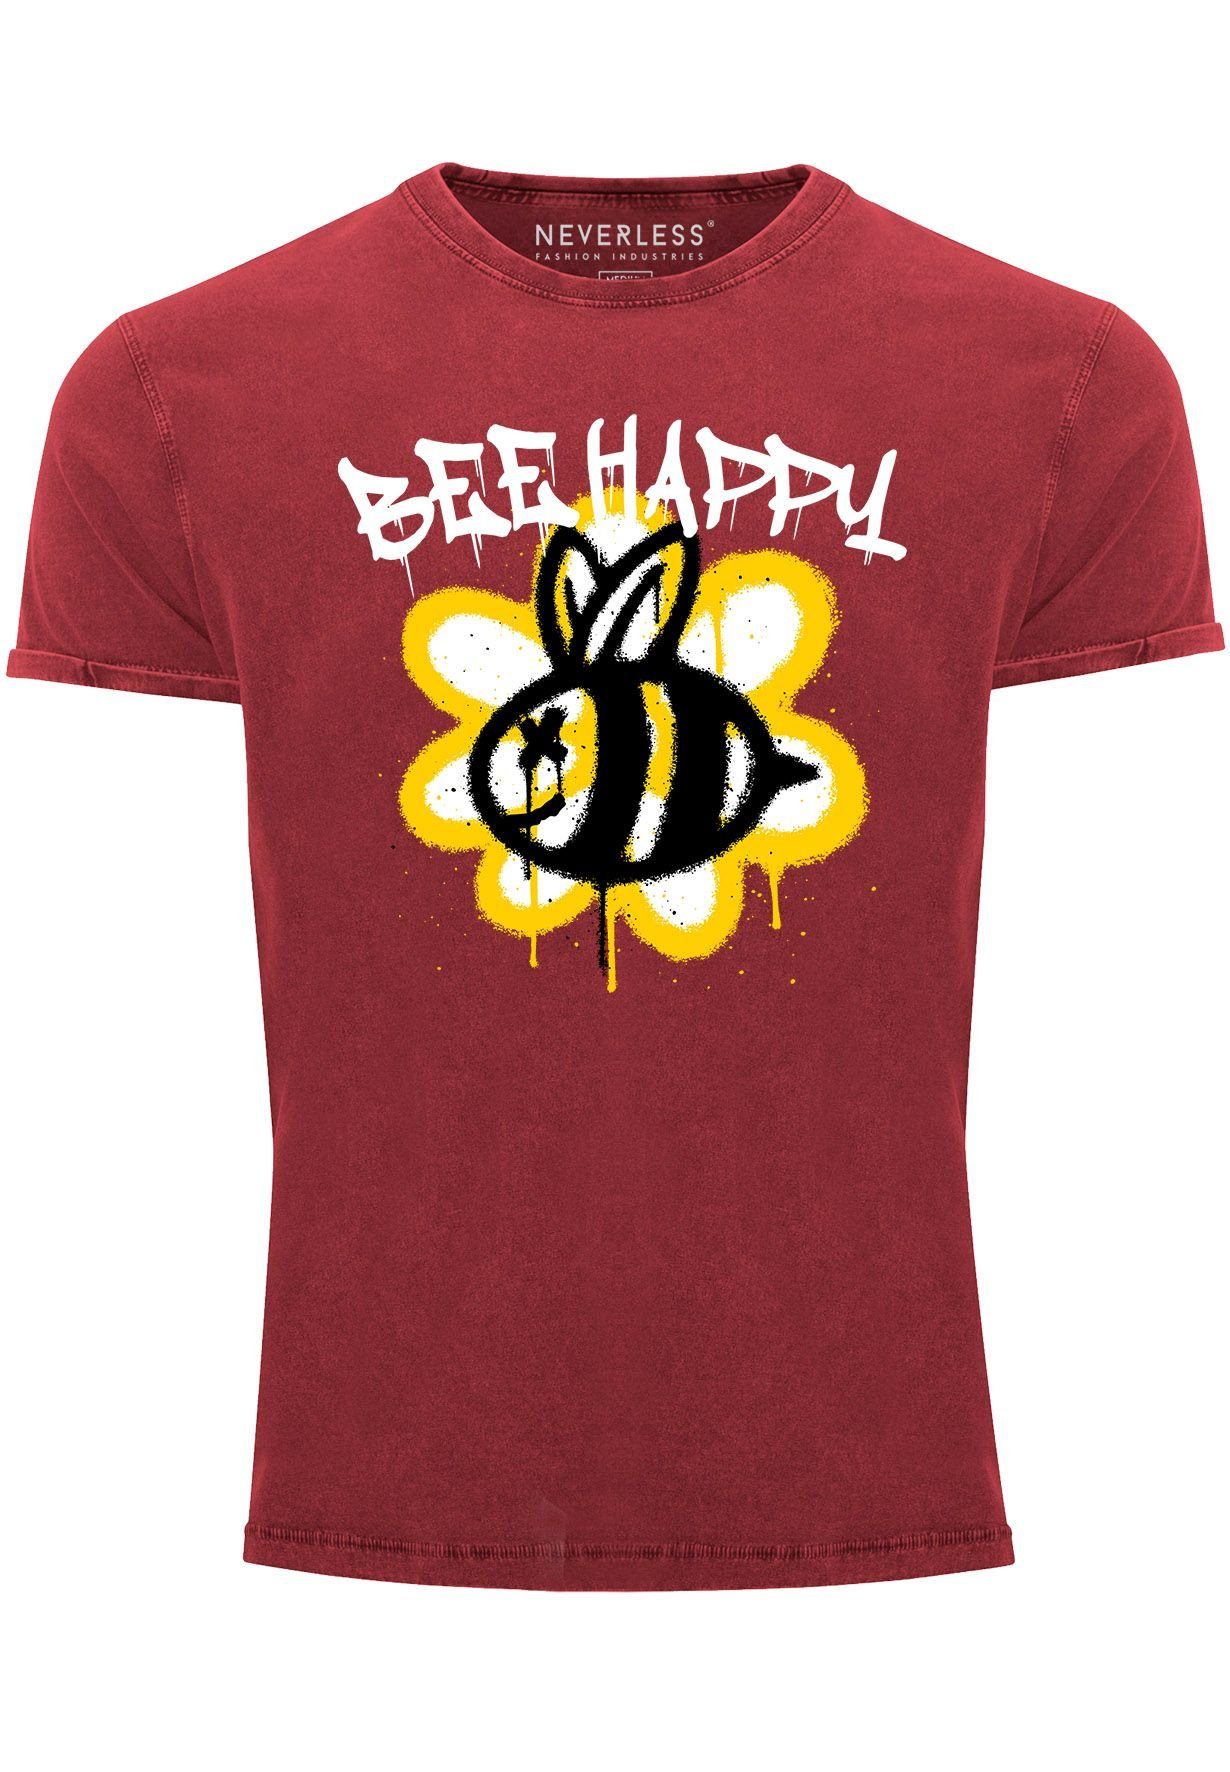 Schriftzu Biene Happy Aufdruck Vintage-Shirt Graffiti mit Neverless Print Print-Shirt rot Herren Bee Blume